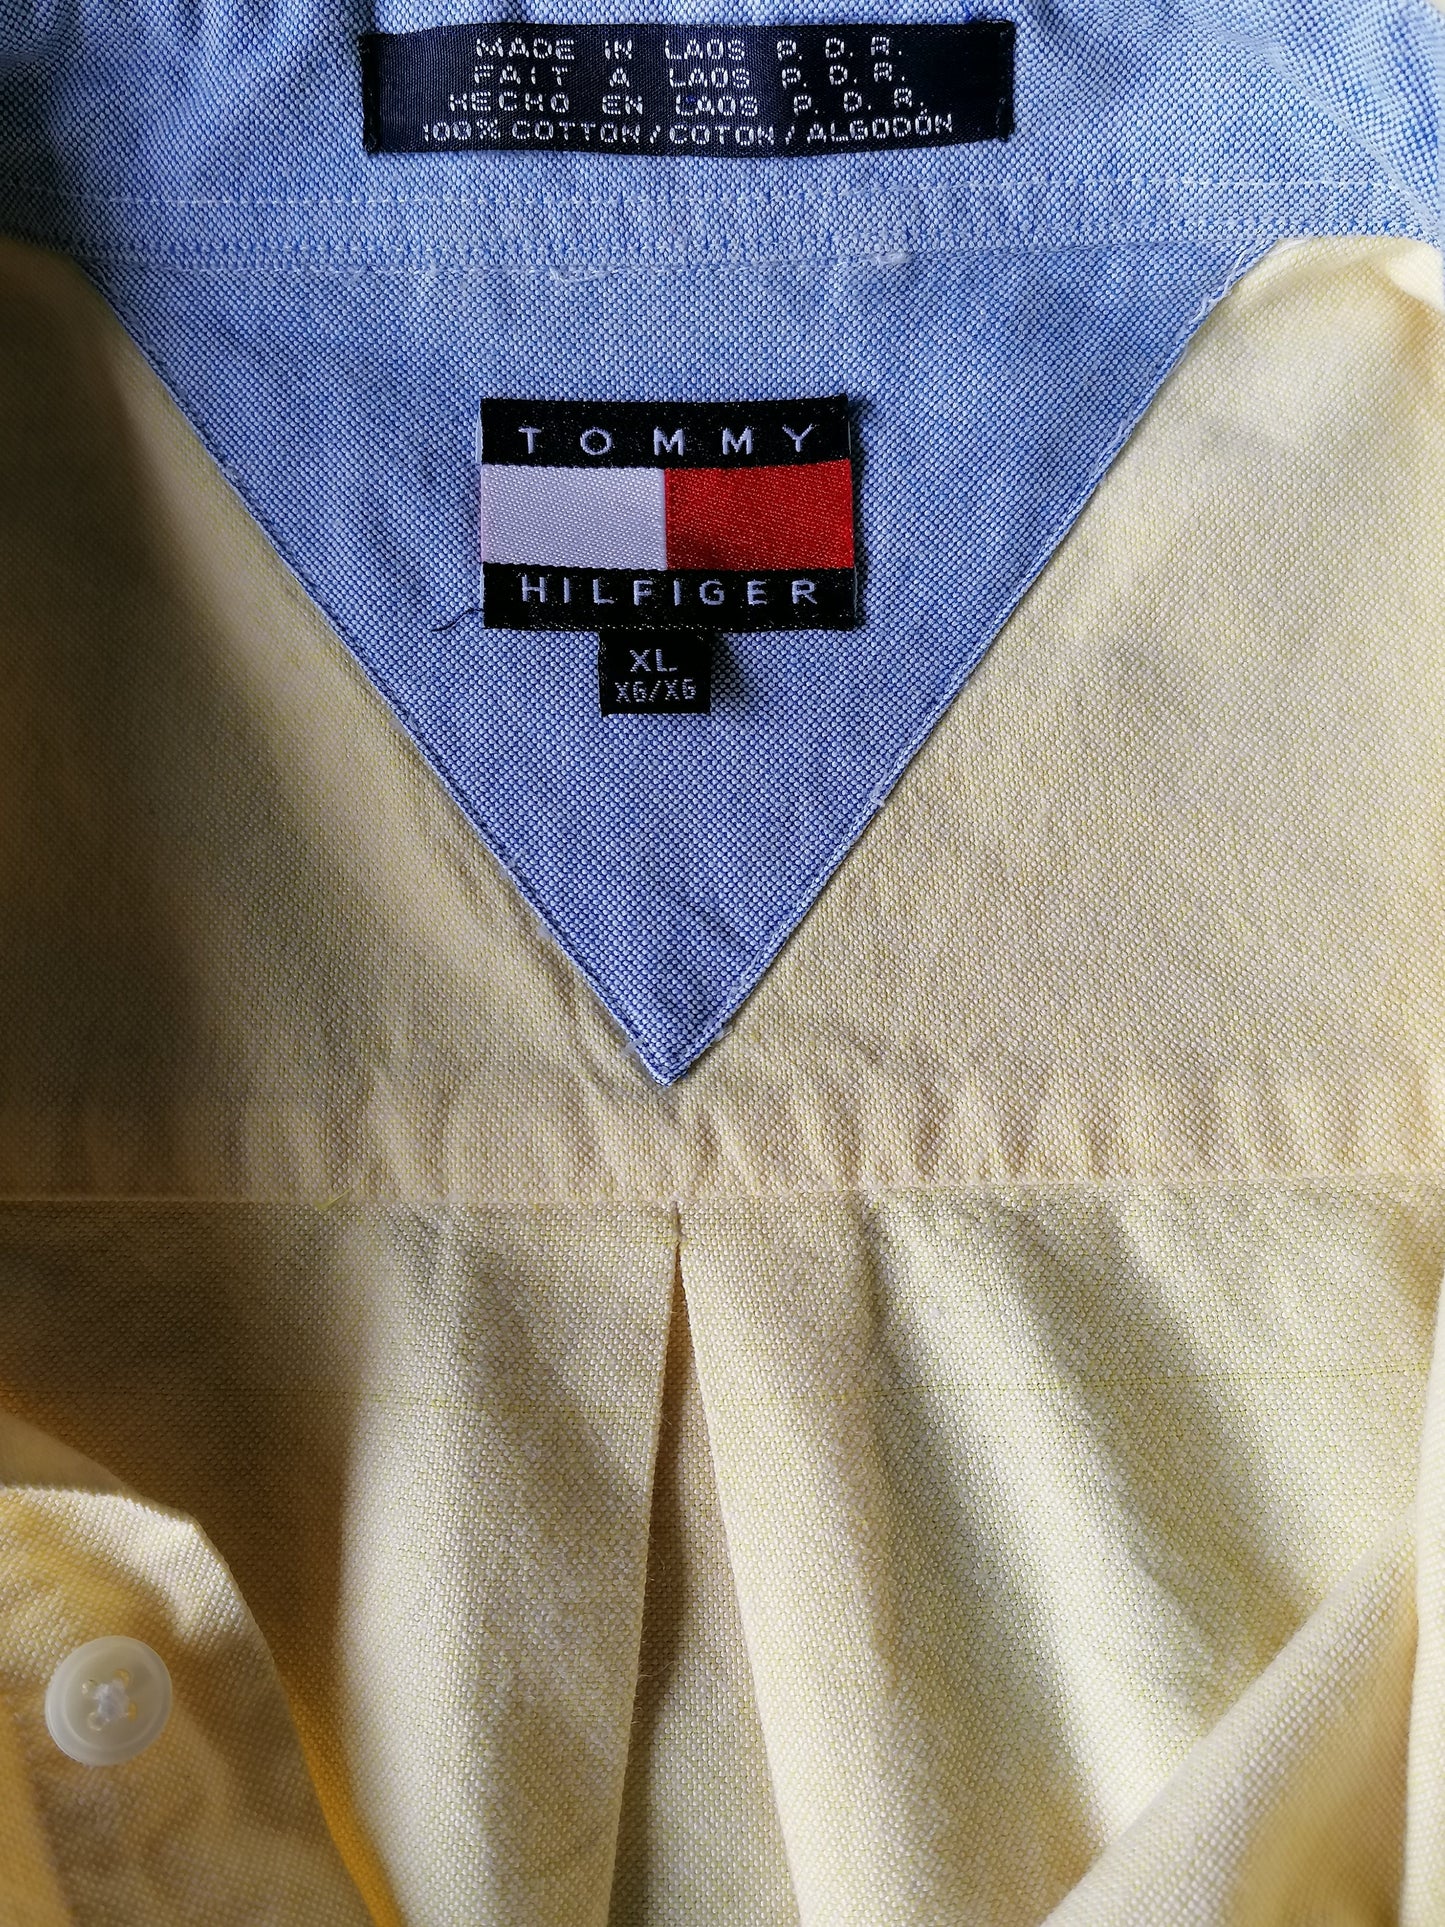 Vintage Tommy Hilfiger overhemd. Geel gekleurd. Maat XL / XXL